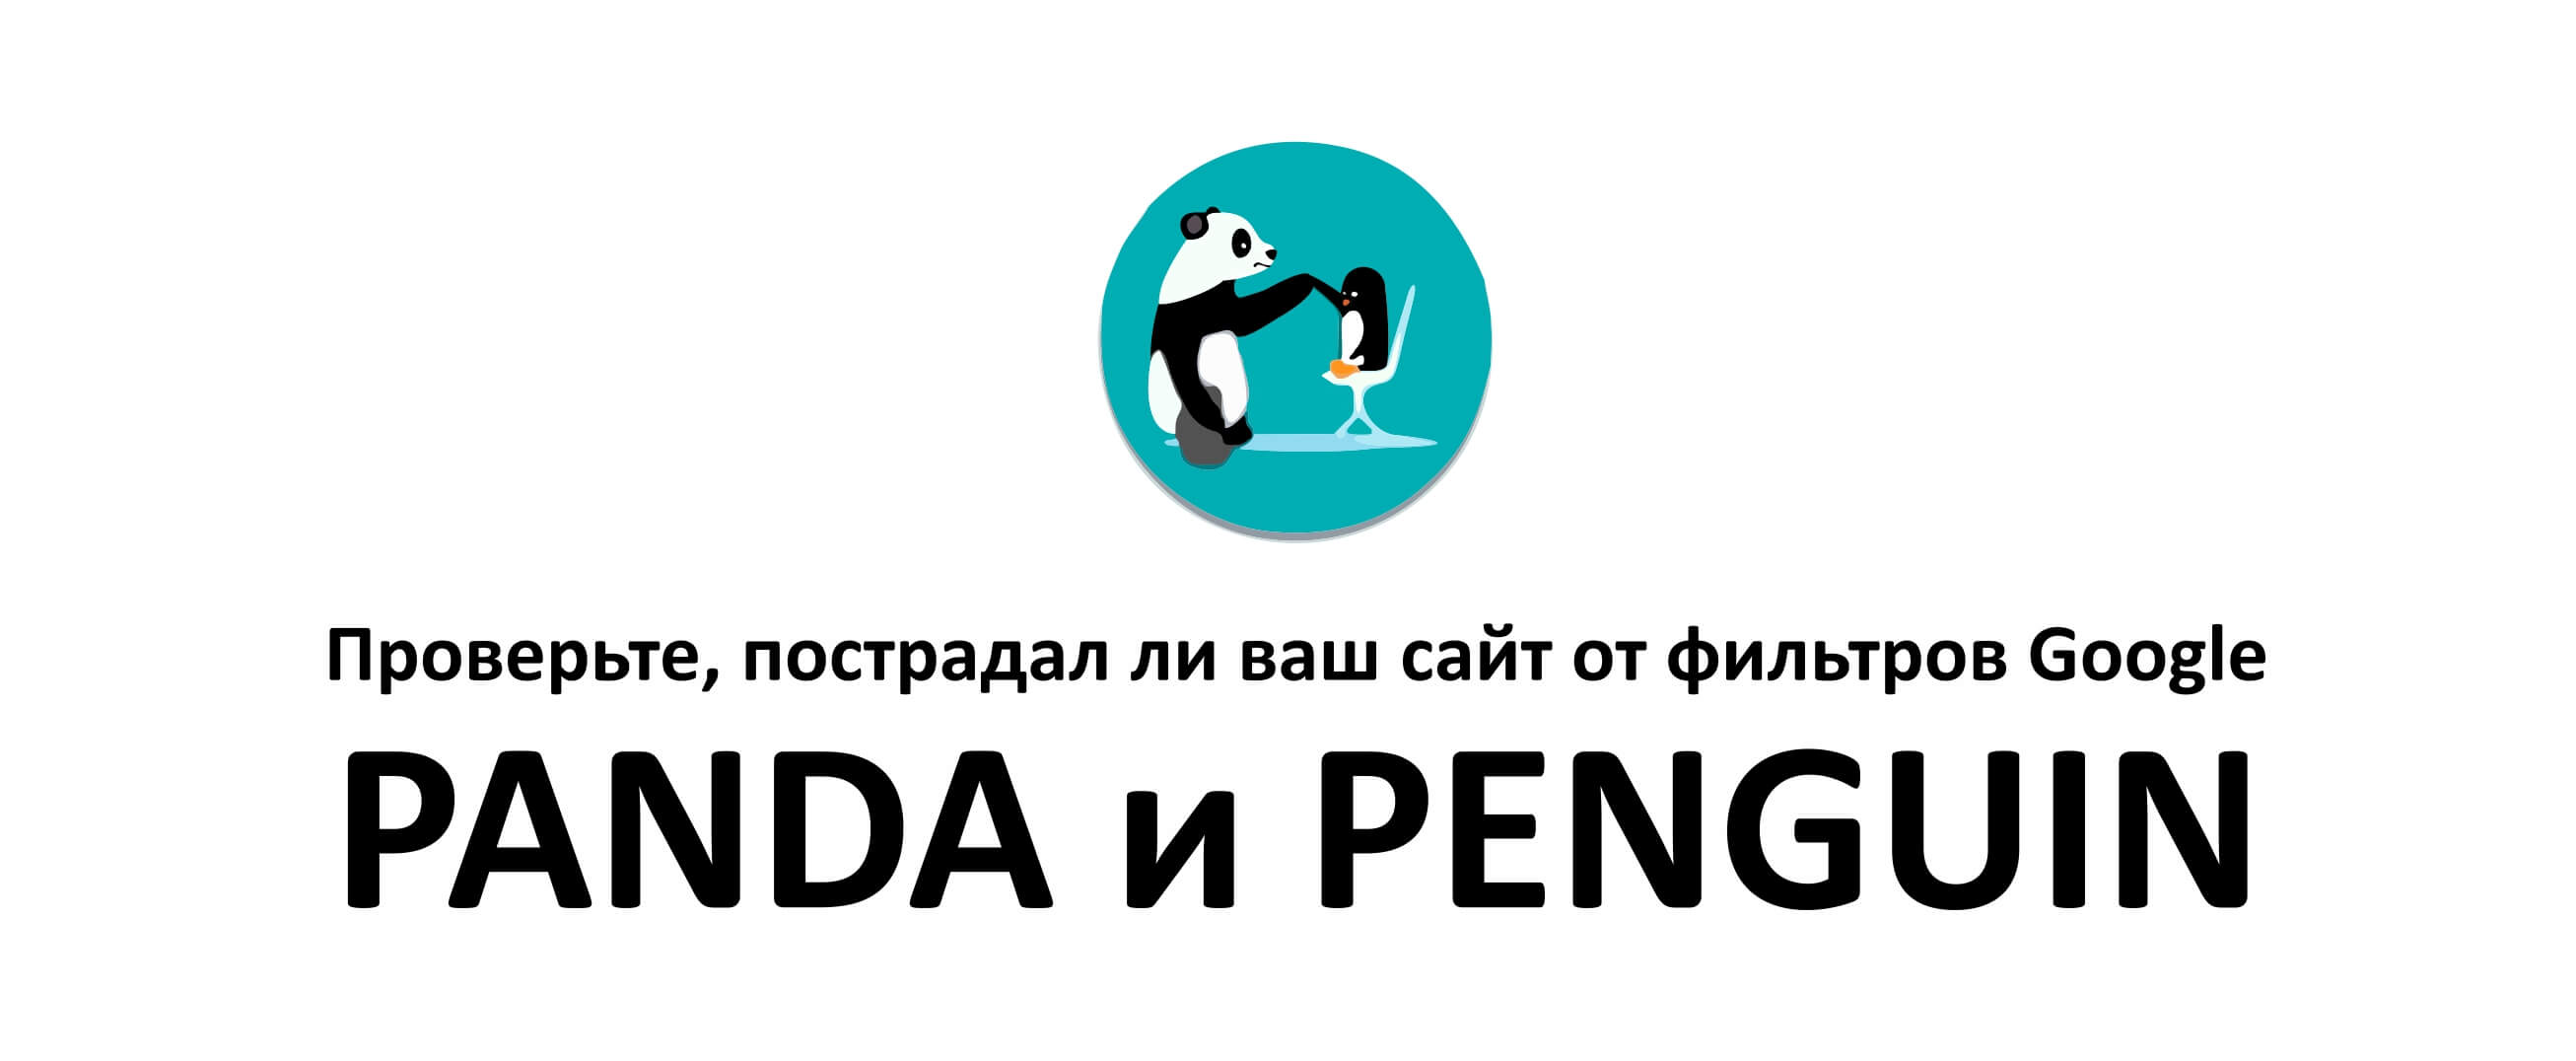 Инфографика: от какого алгоритма мог пострадать ваш сайт – Panda или Penguin?